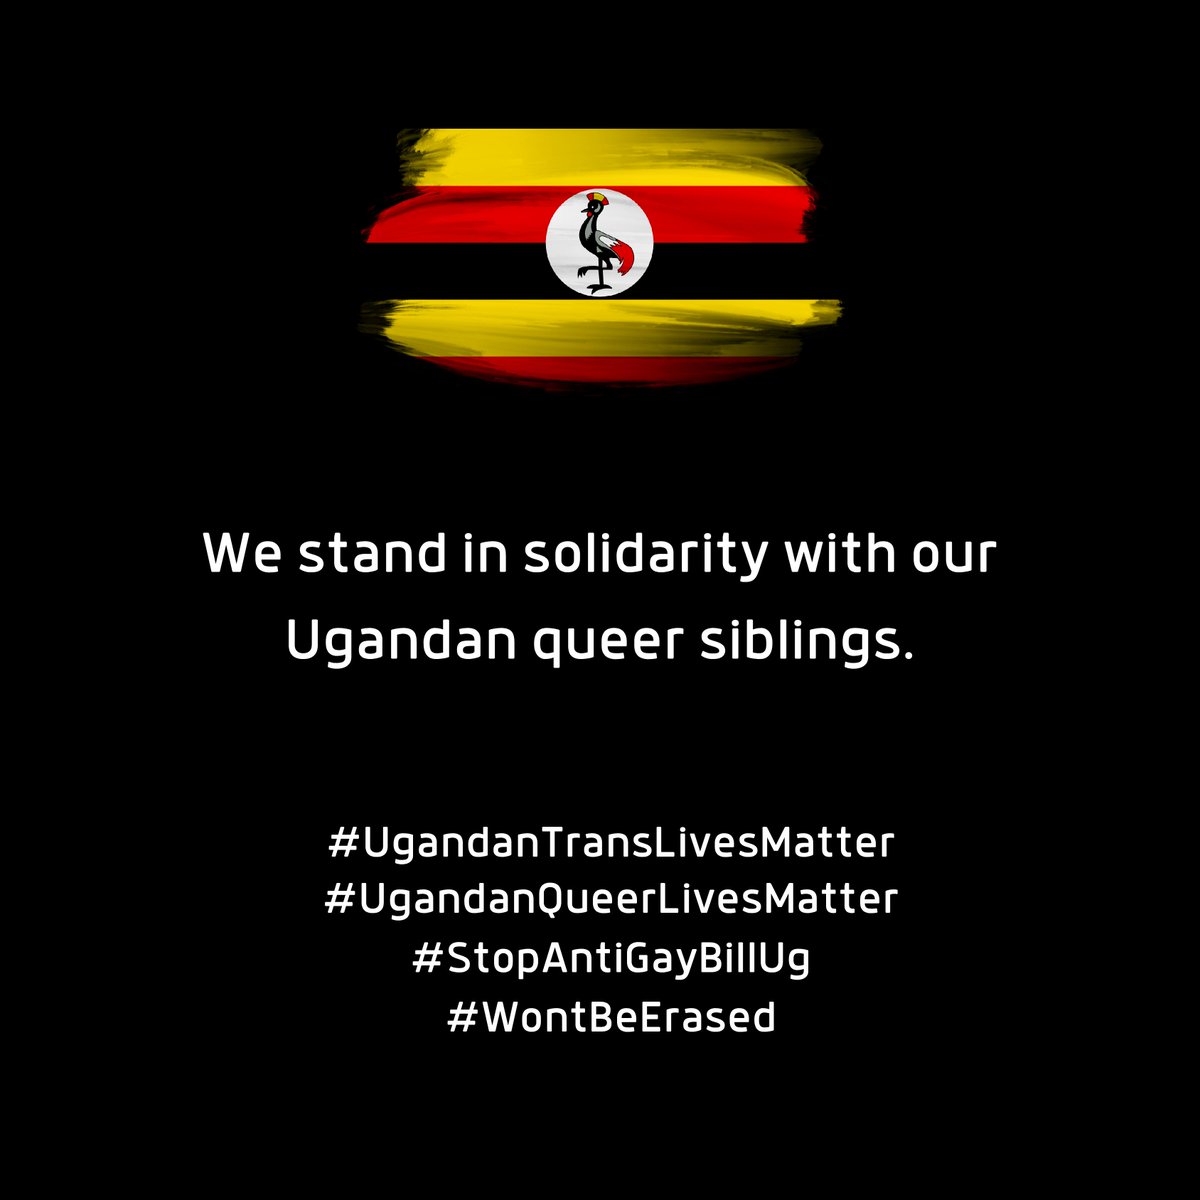 We stand in solidarity with our Ugandan queer siblings
#UgandanTransLivesMatter #ugandanqueerlivesmatter #WontBeErased
#StopAntiGayBillUg #translivesmatter #intersectionality #transphobiakills #homophobiakills